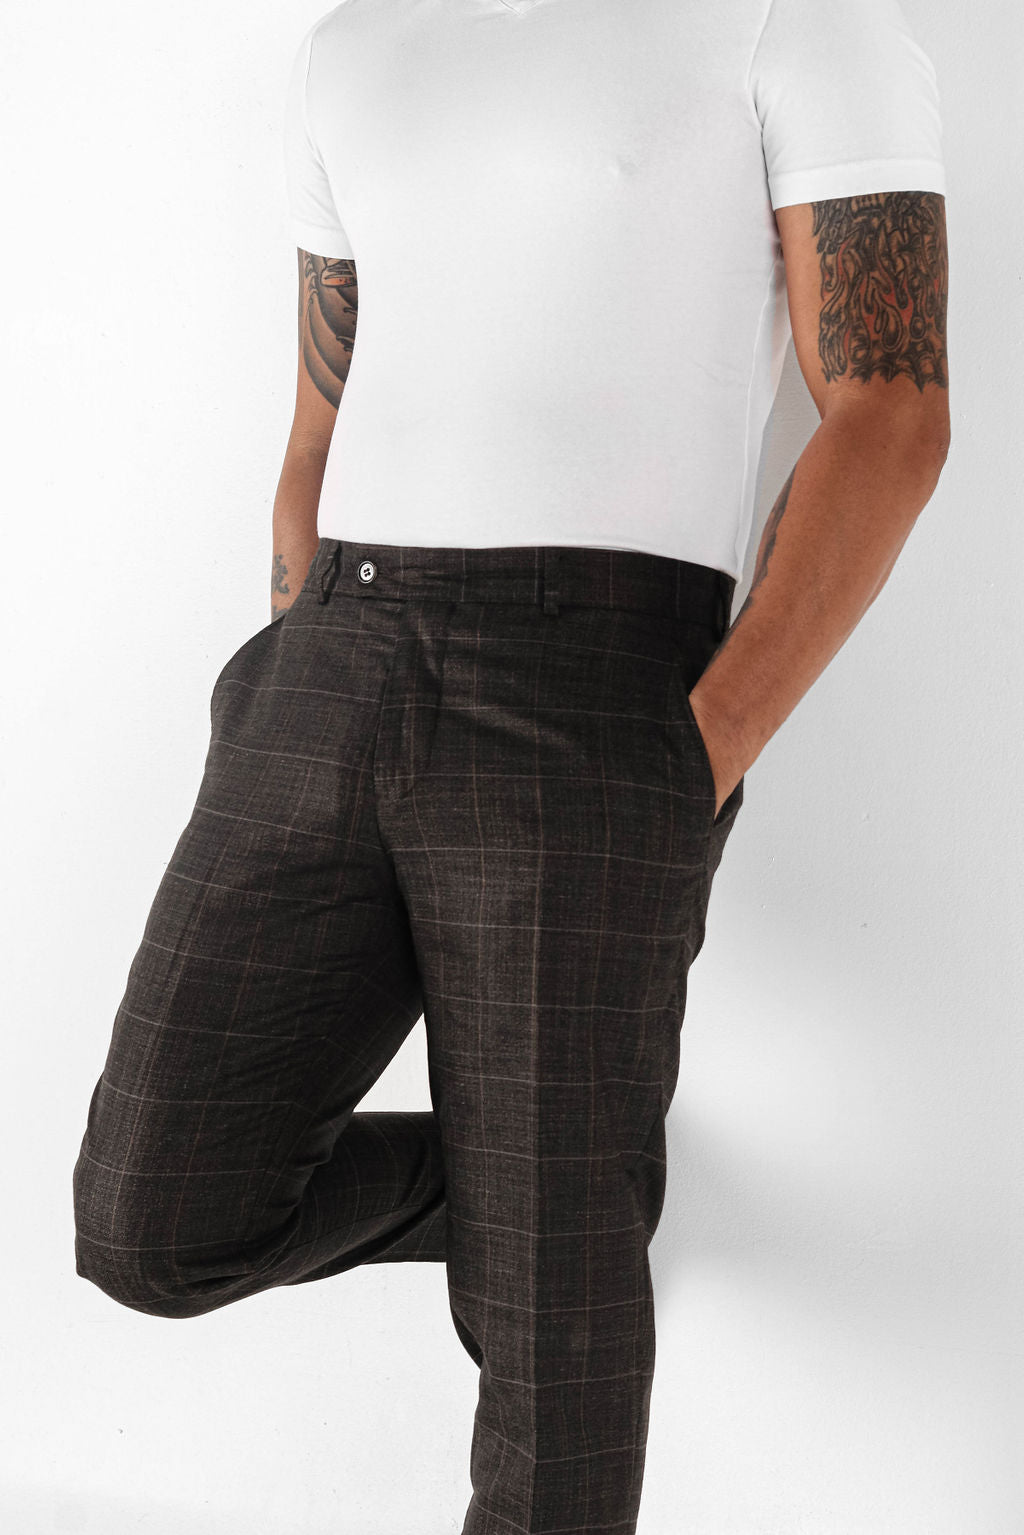 MODA NOVA Big & Tall Men's Dress Plaid Pants Formal Printed Business  Trousers Dark Brown LT(US 34) - Walmart.com